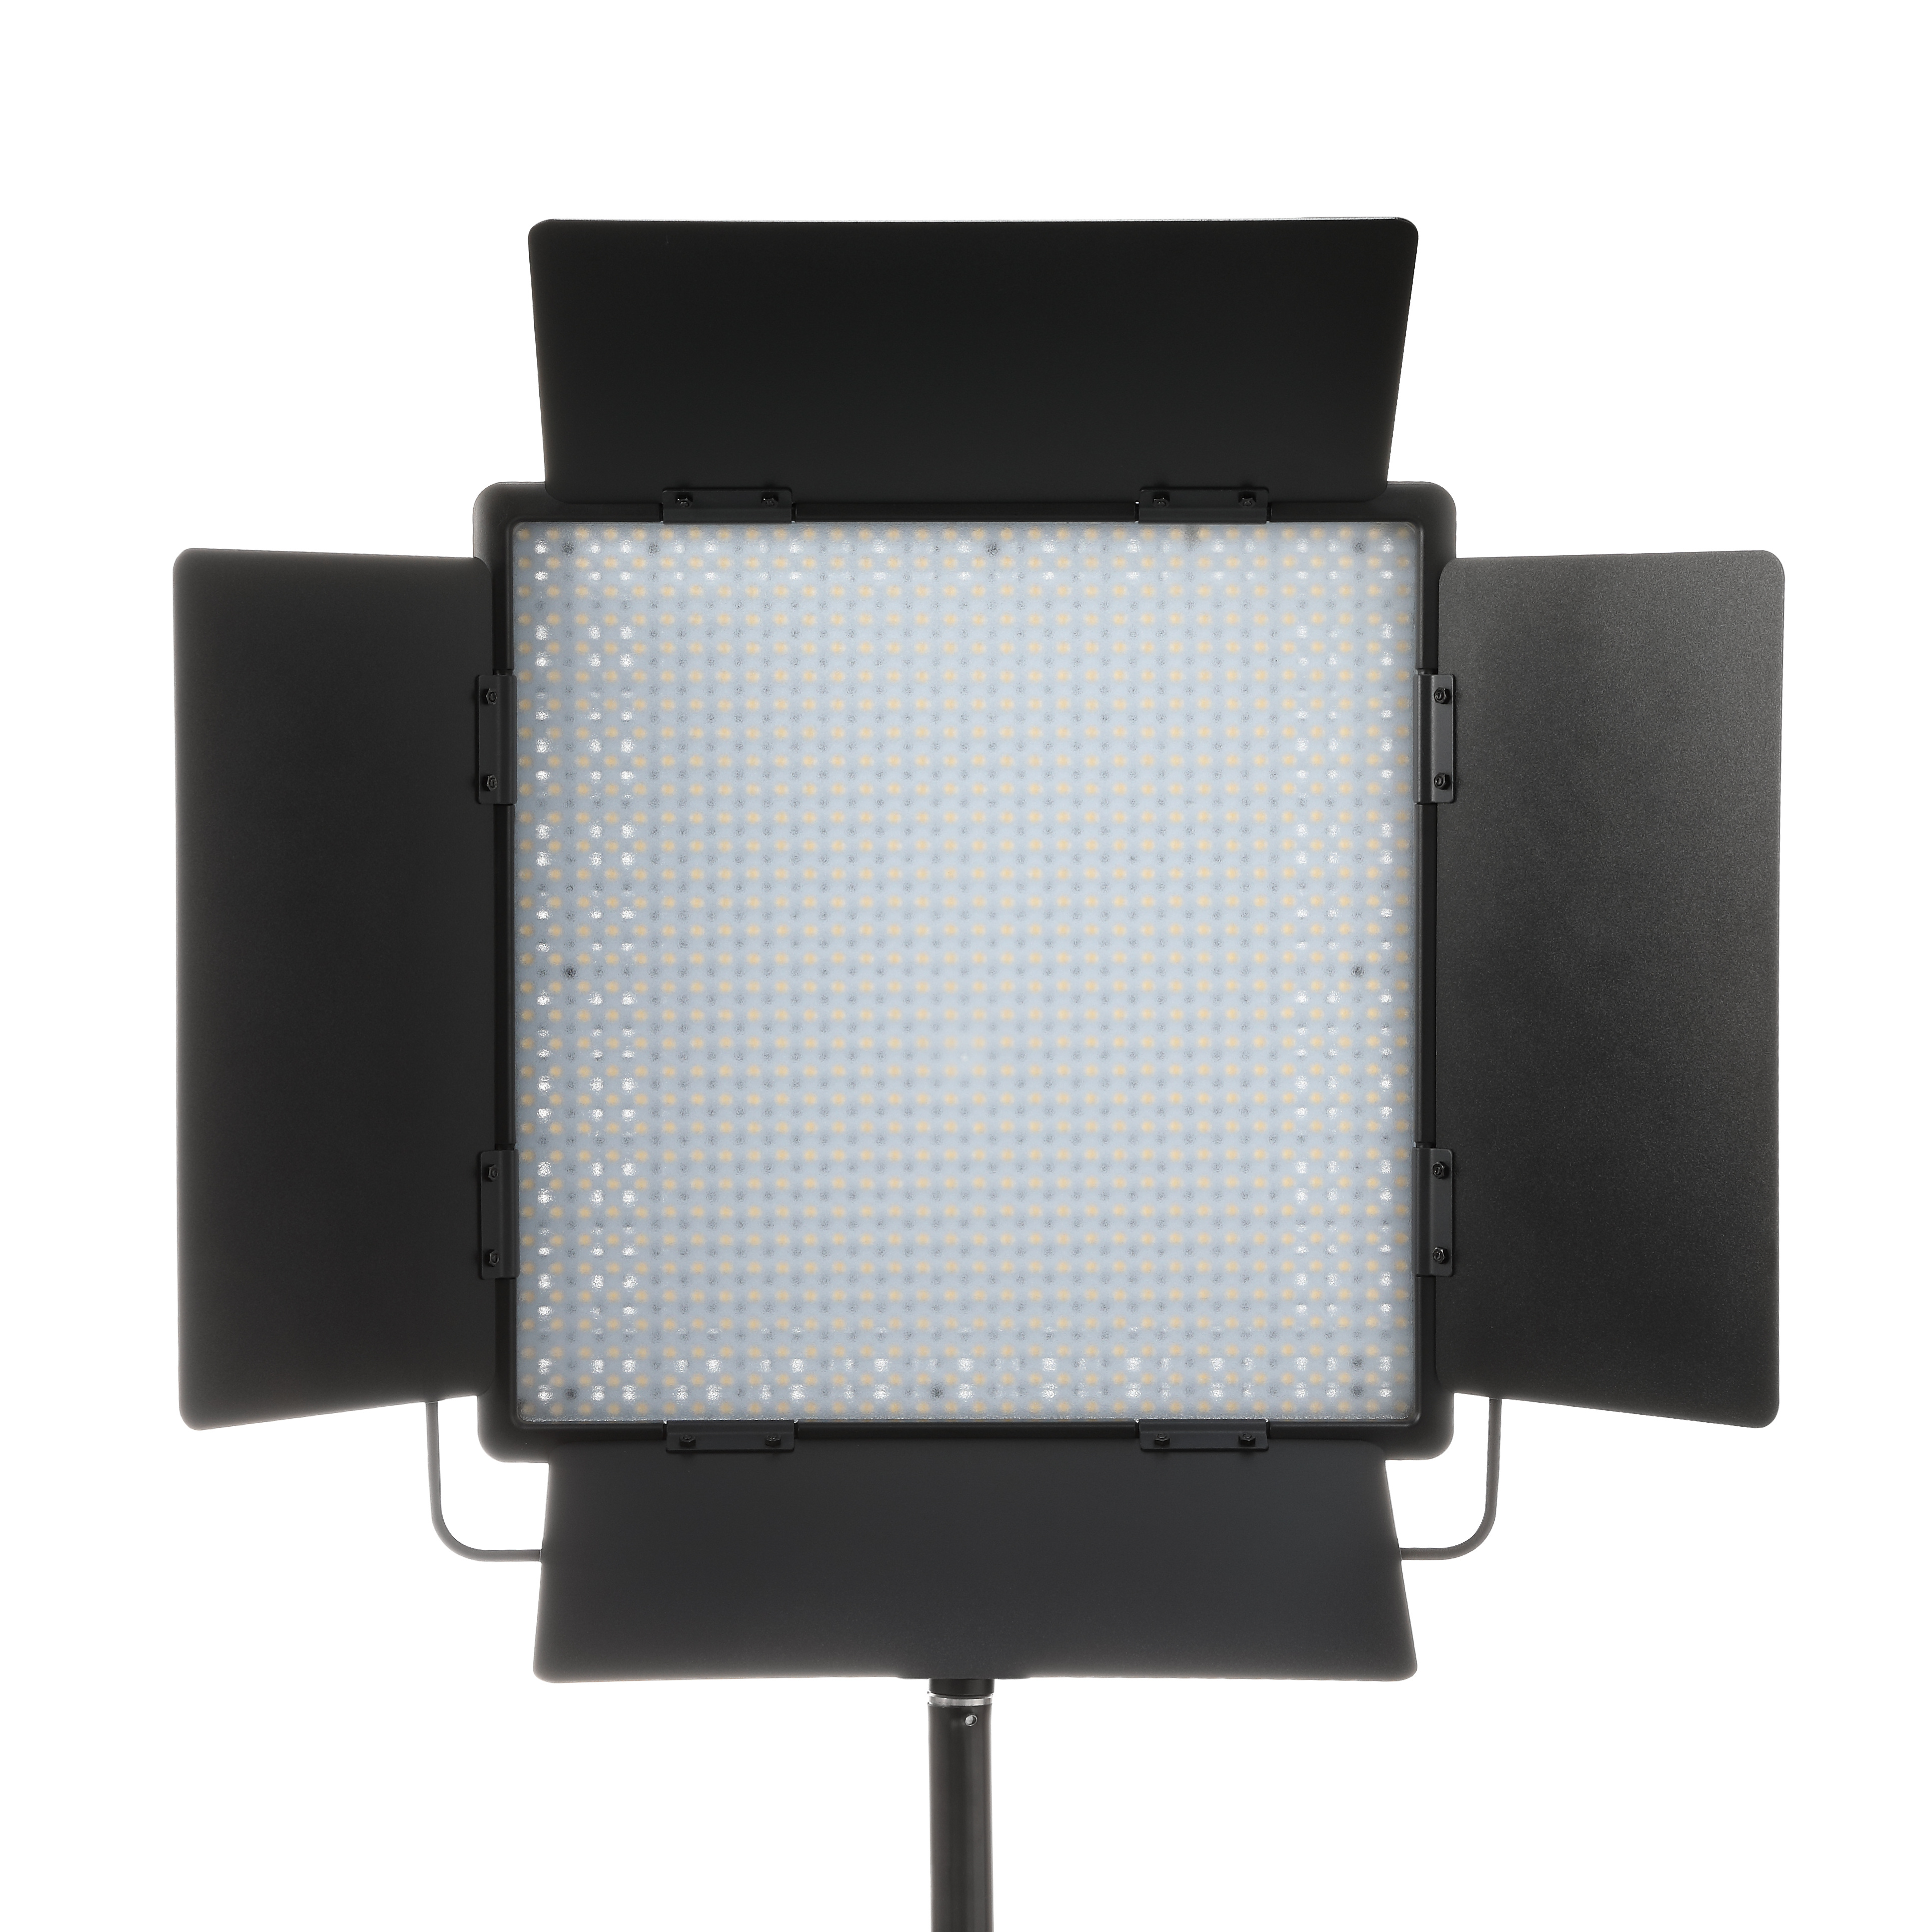 картинка Осветитель светодиодный Godox LED1000D II студийный от магазина Ultra-mart